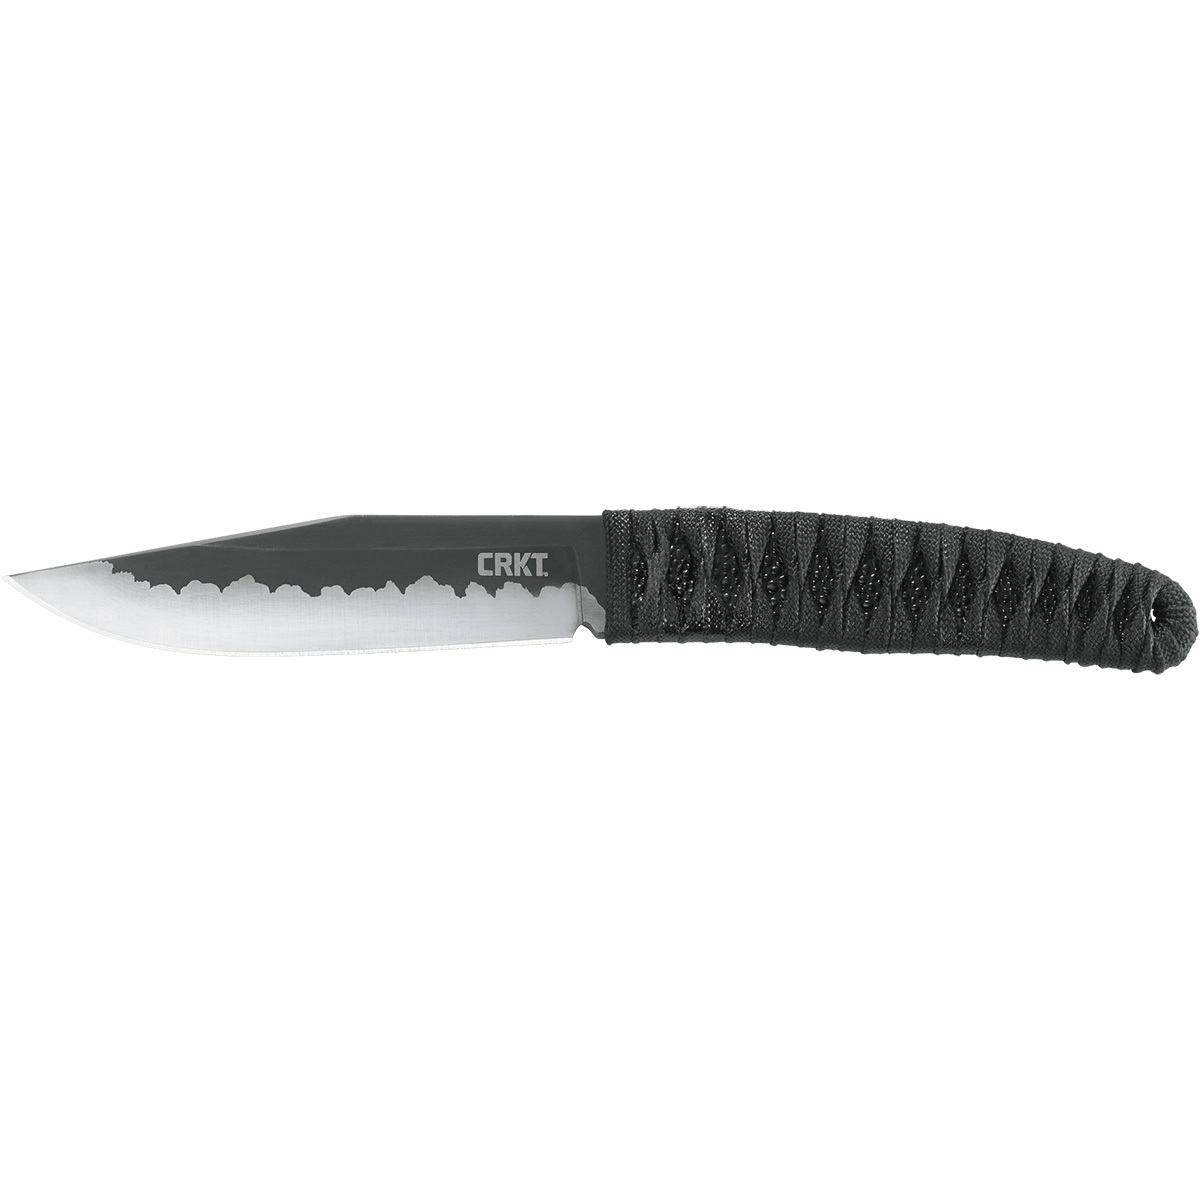 Нож с фиксированным клинком CRKT Nishi, сталь 8Cr13MoV, рукоять паракорд